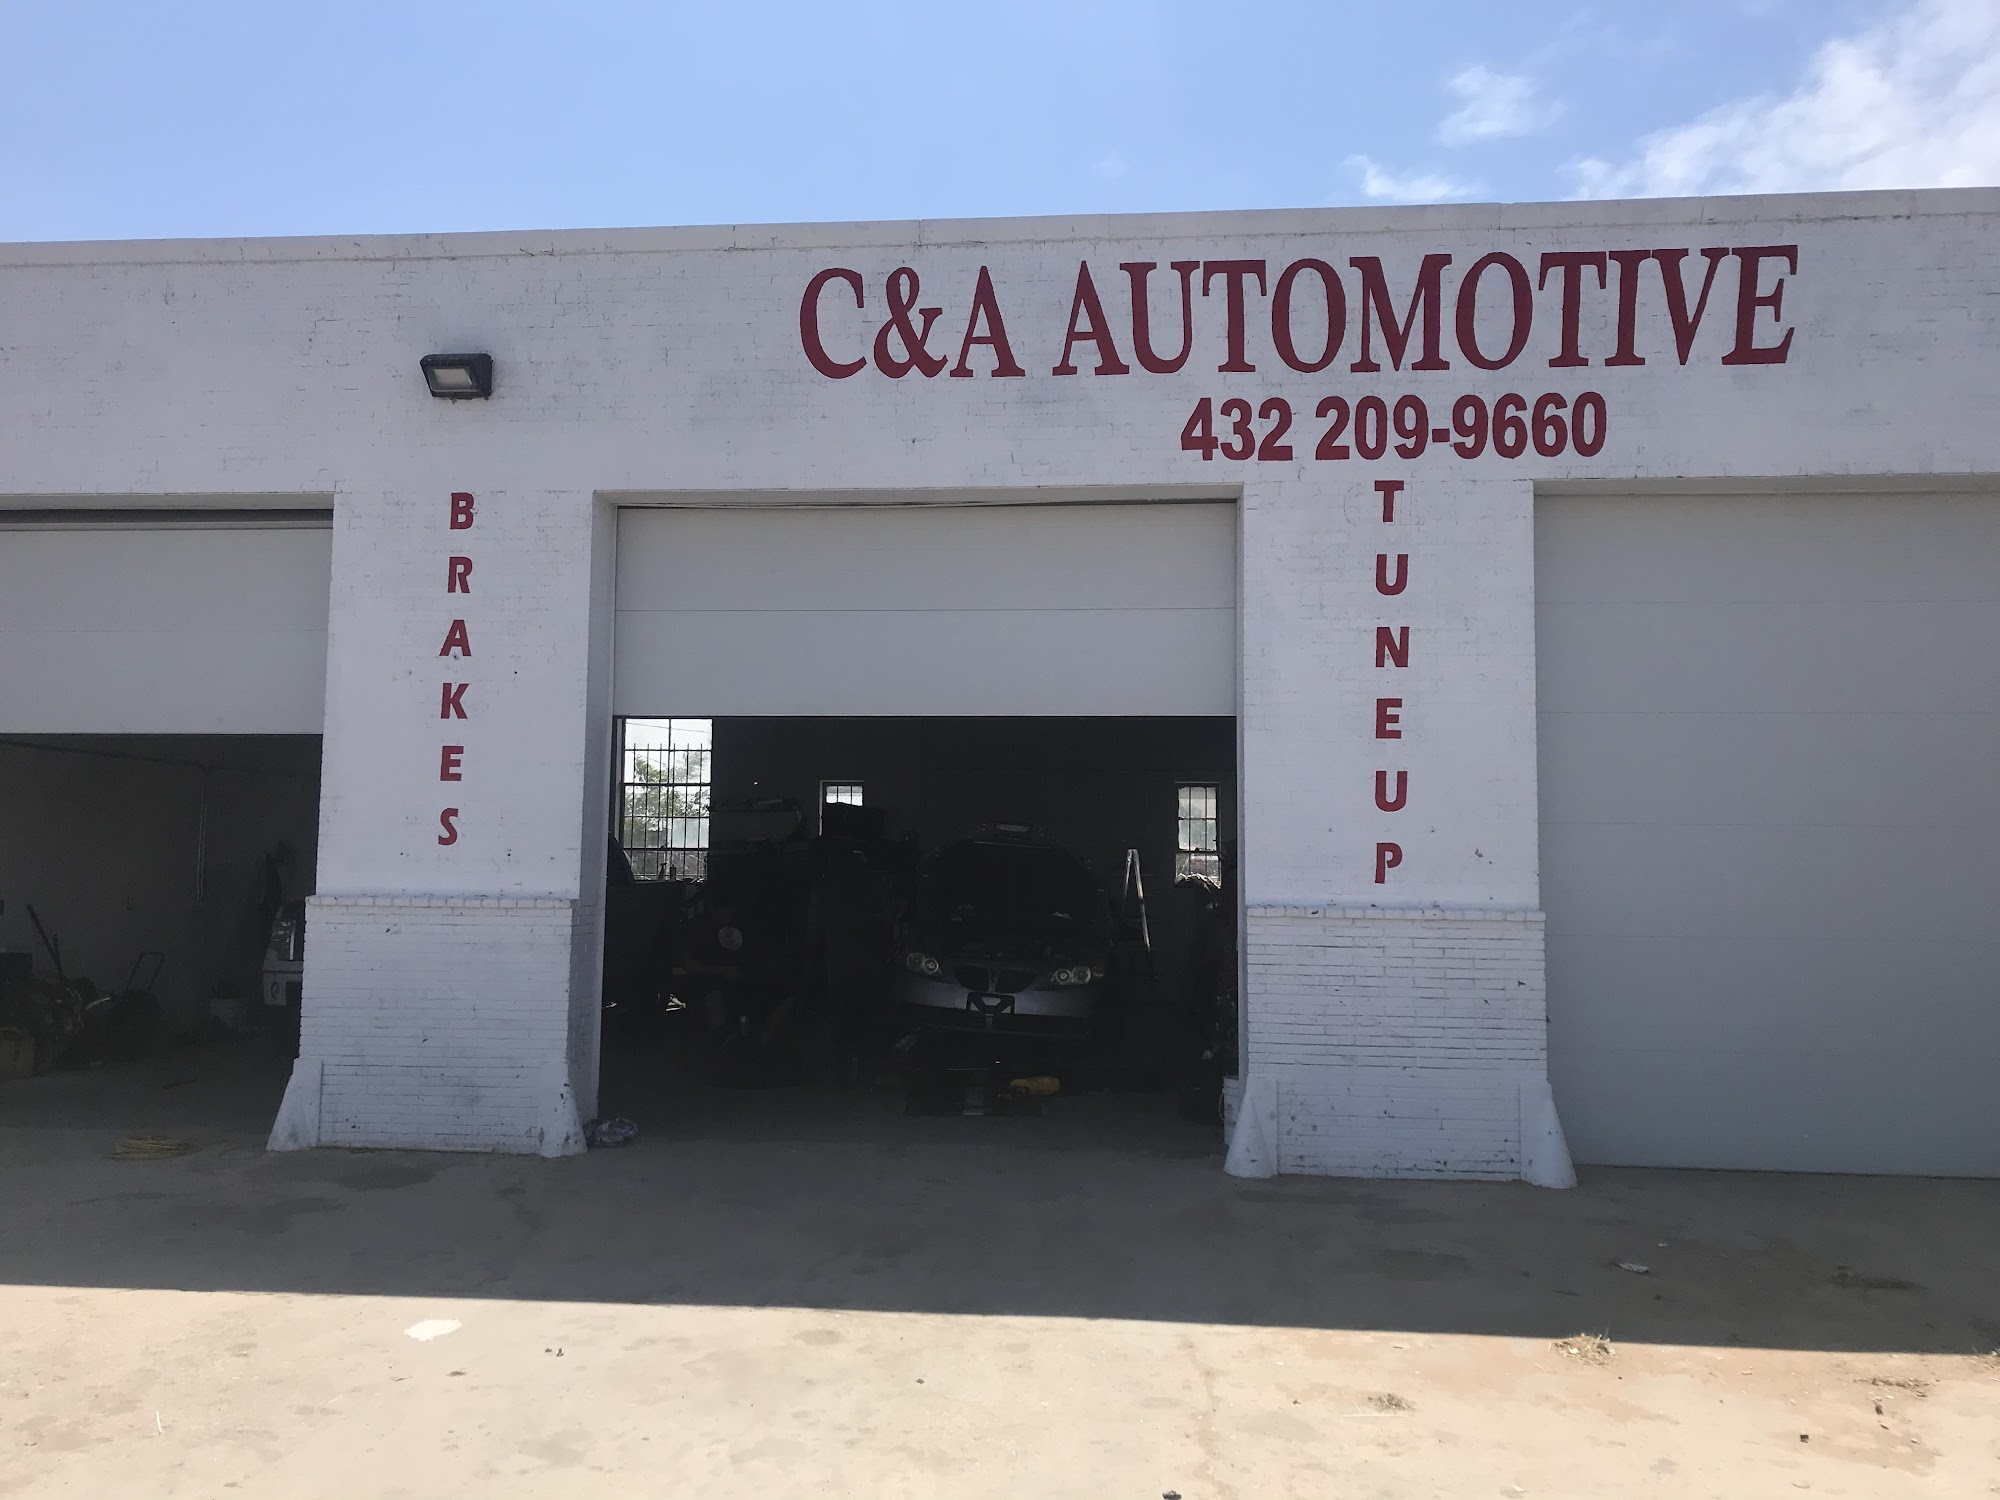 C & A Automotive